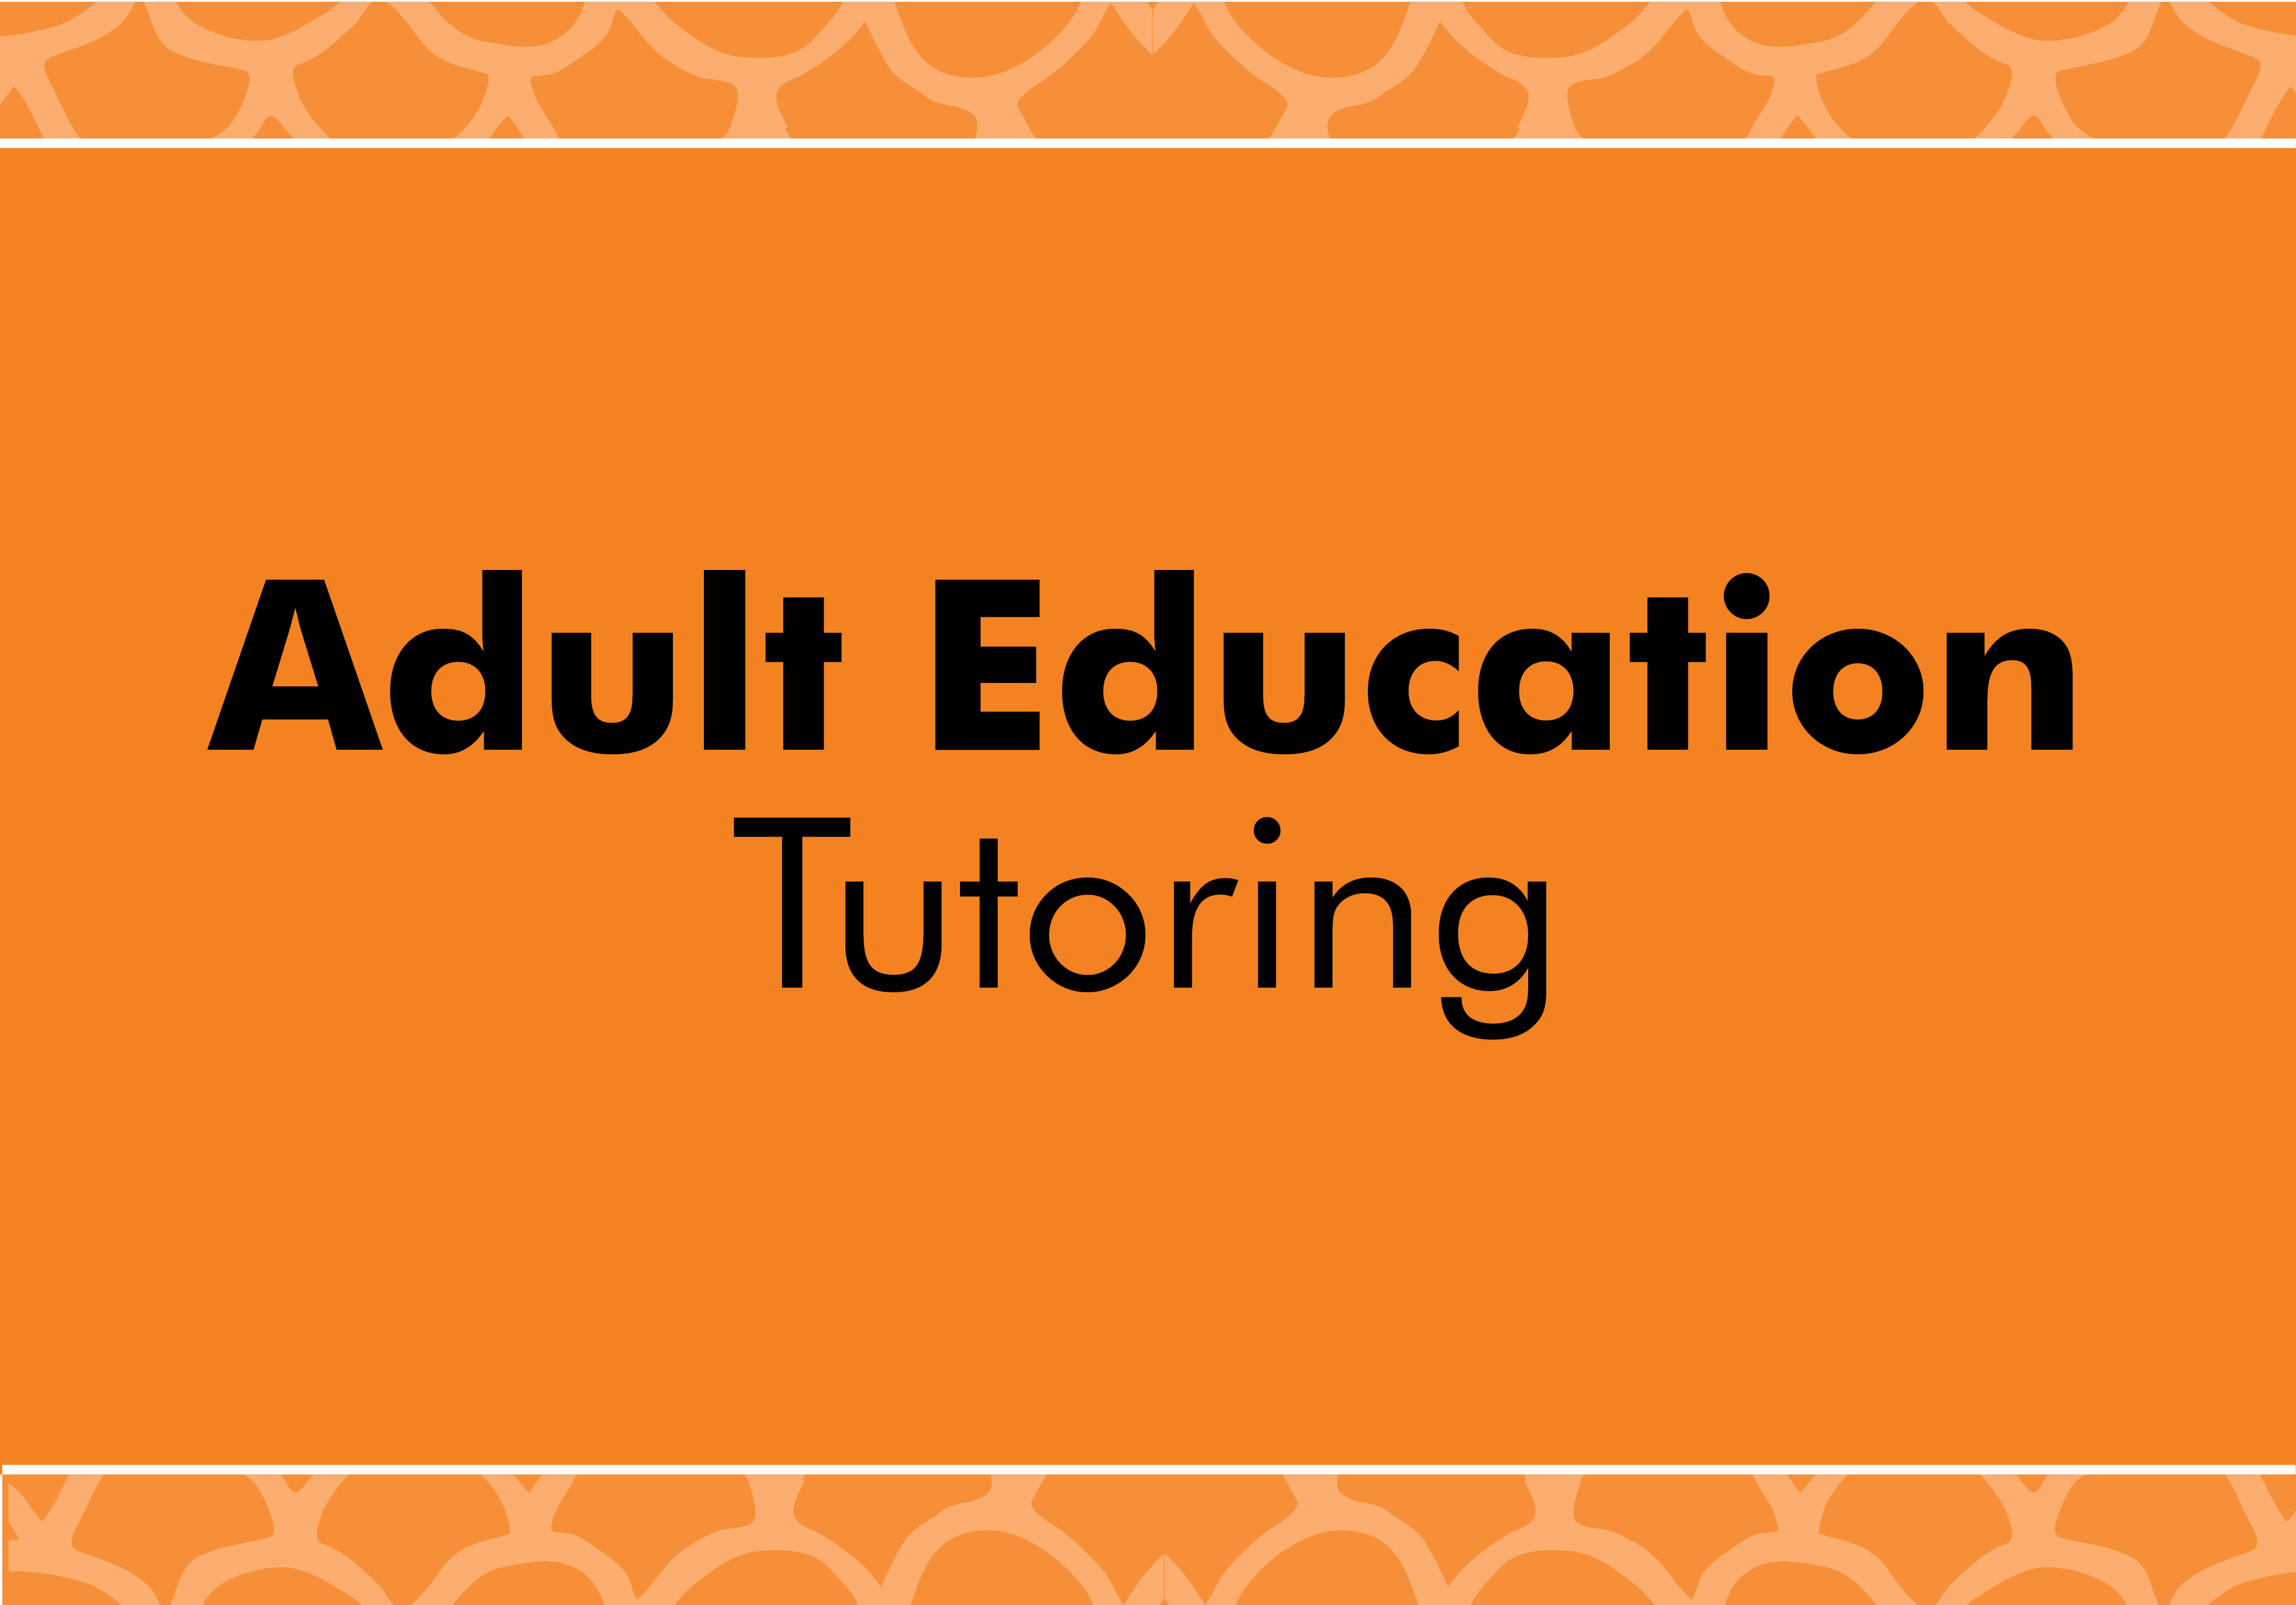 Adult education tutoring